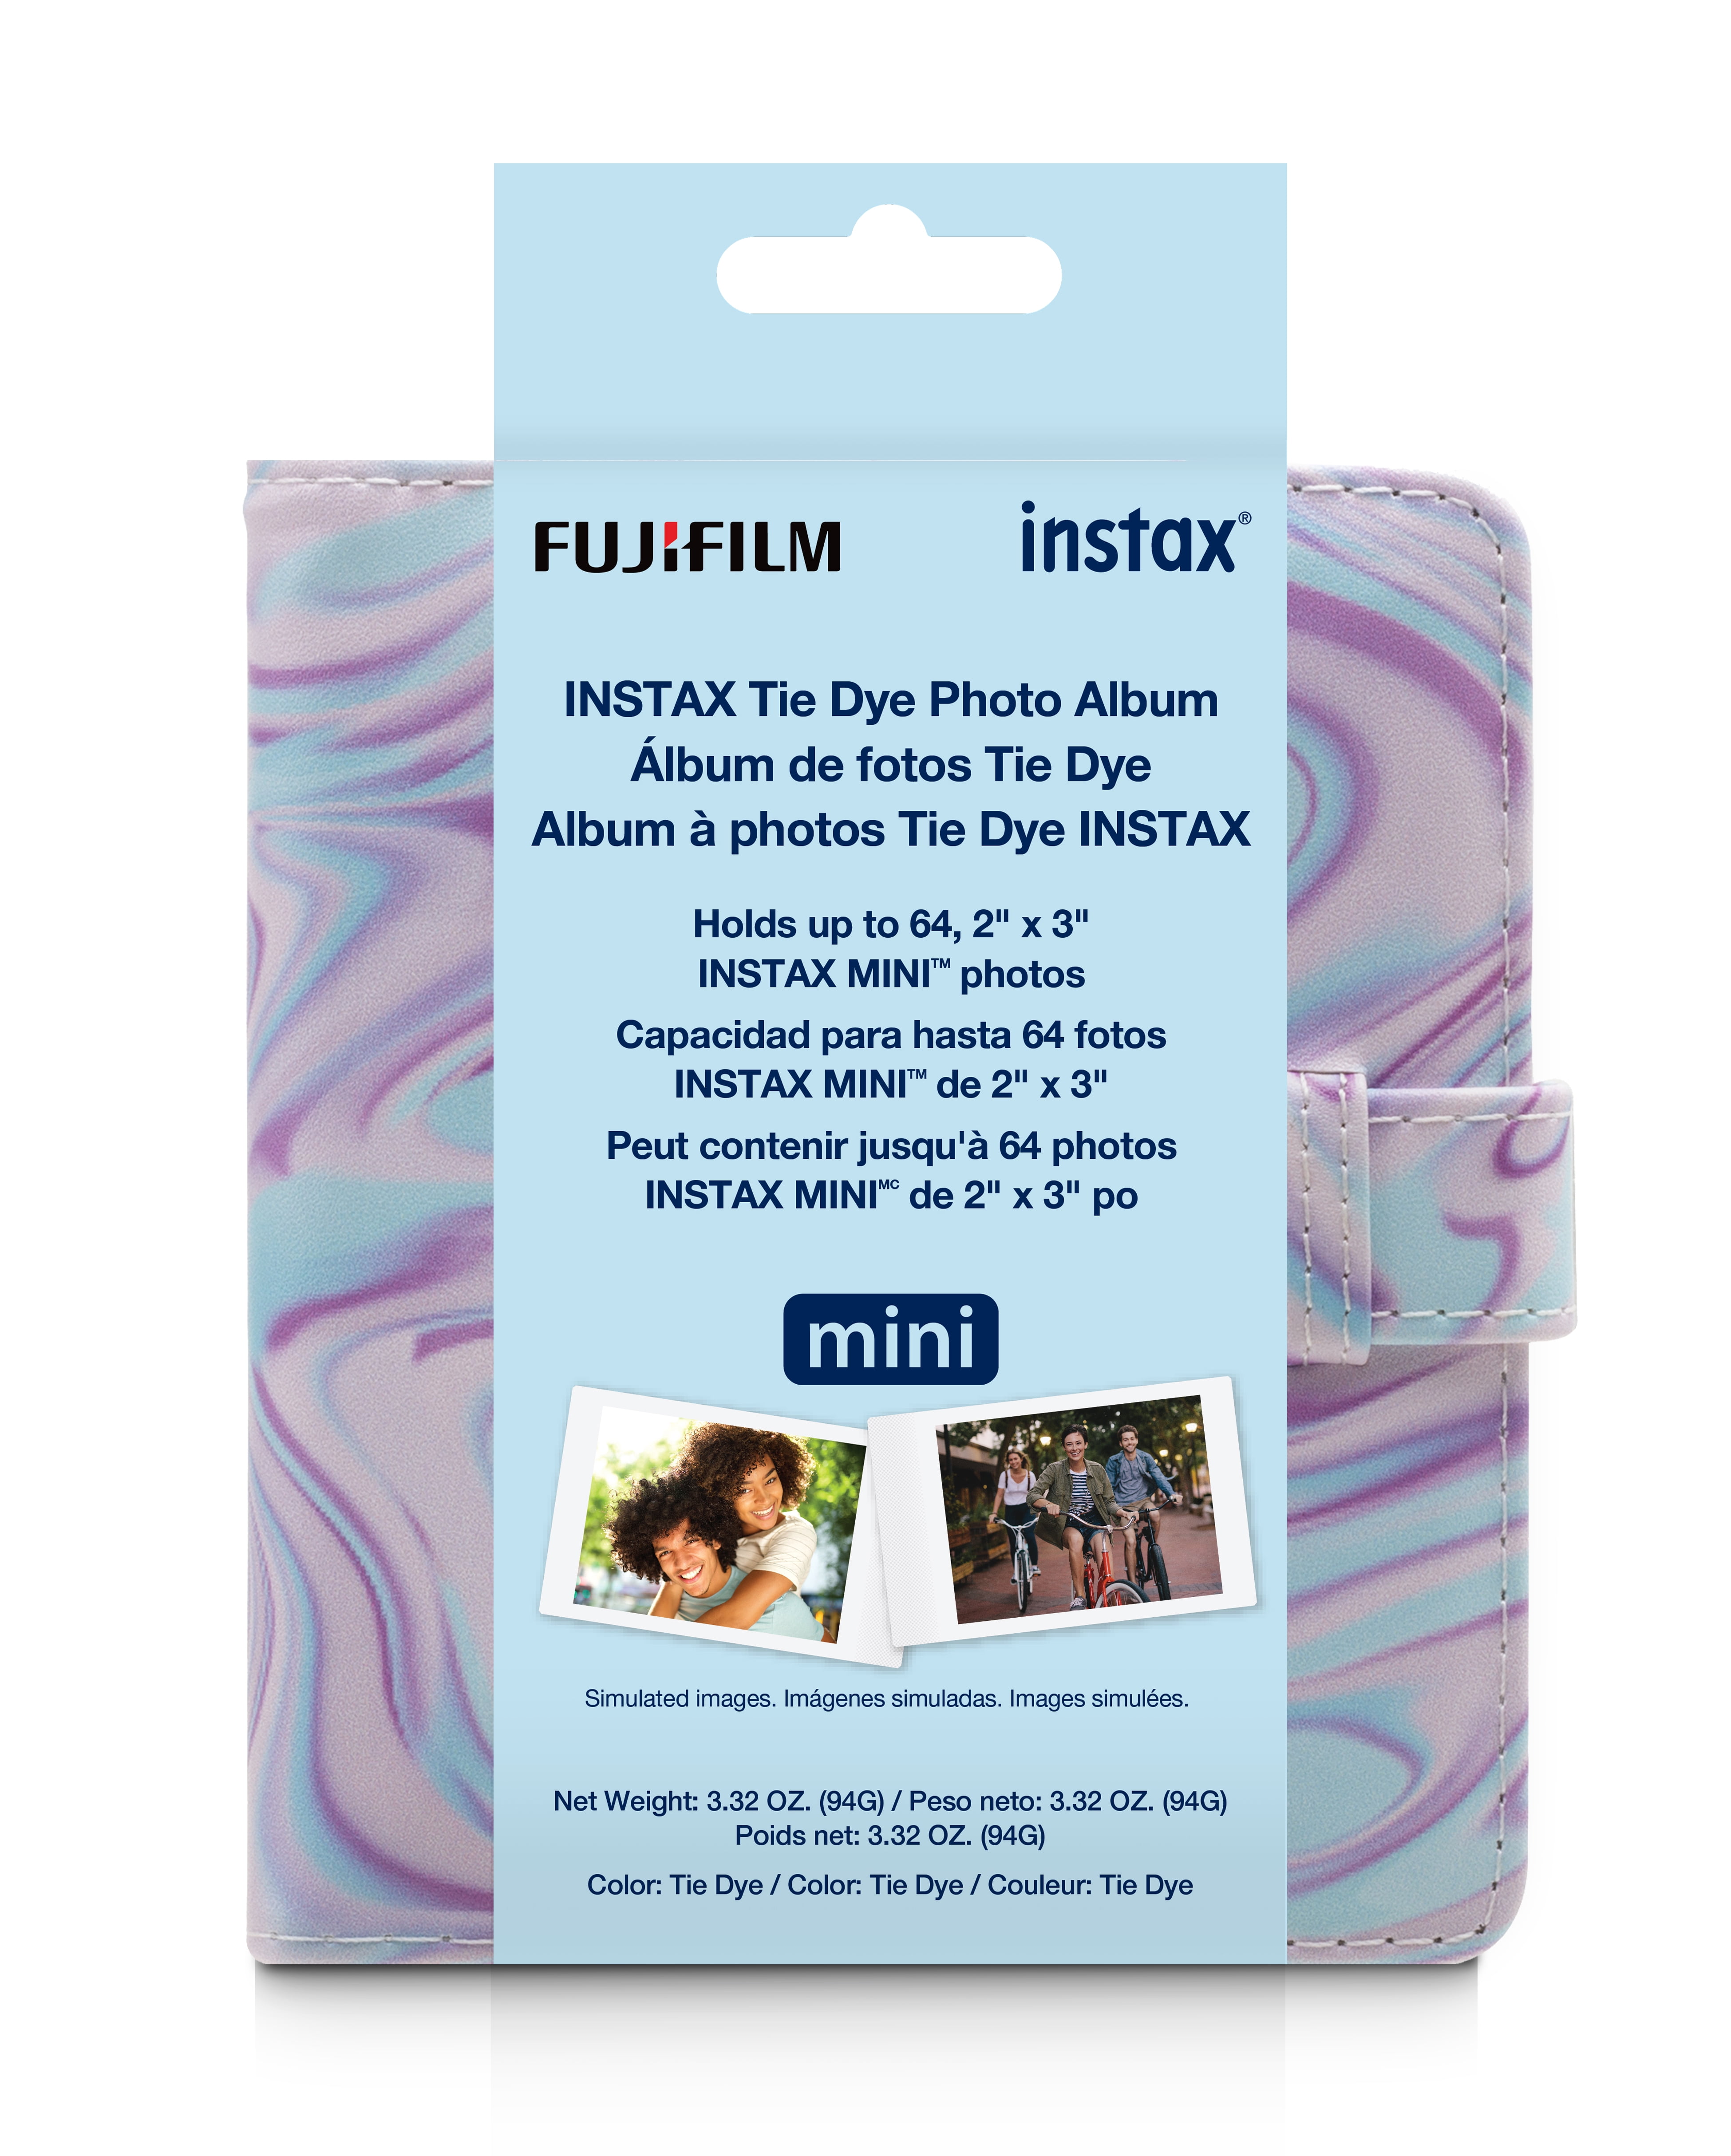 Fujifilm Instax Mini Tie-Dye Photo Album for 2 x 3 Photo Print sizes